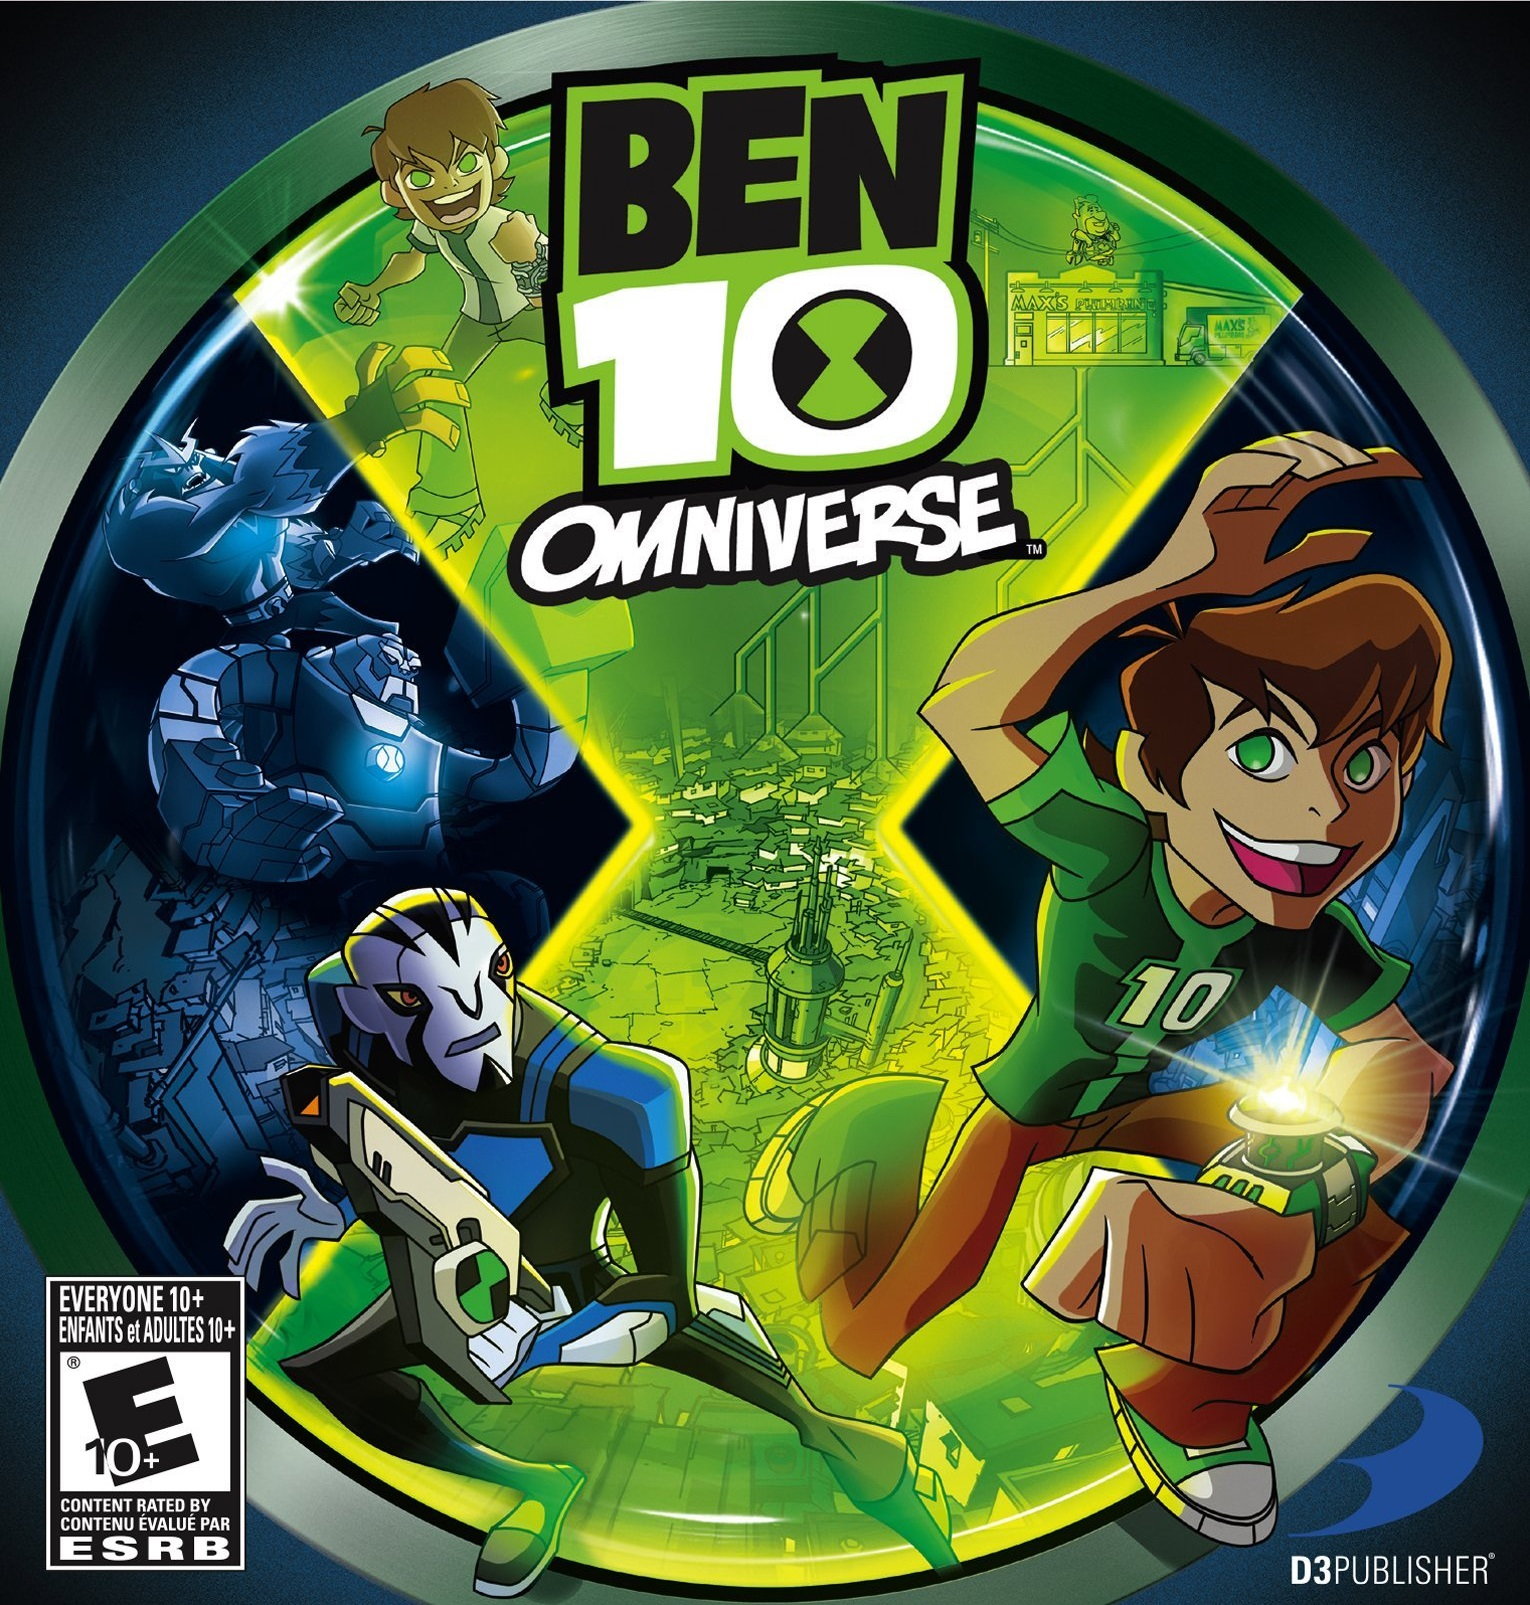 Ben 10 omniverse video game 360 free